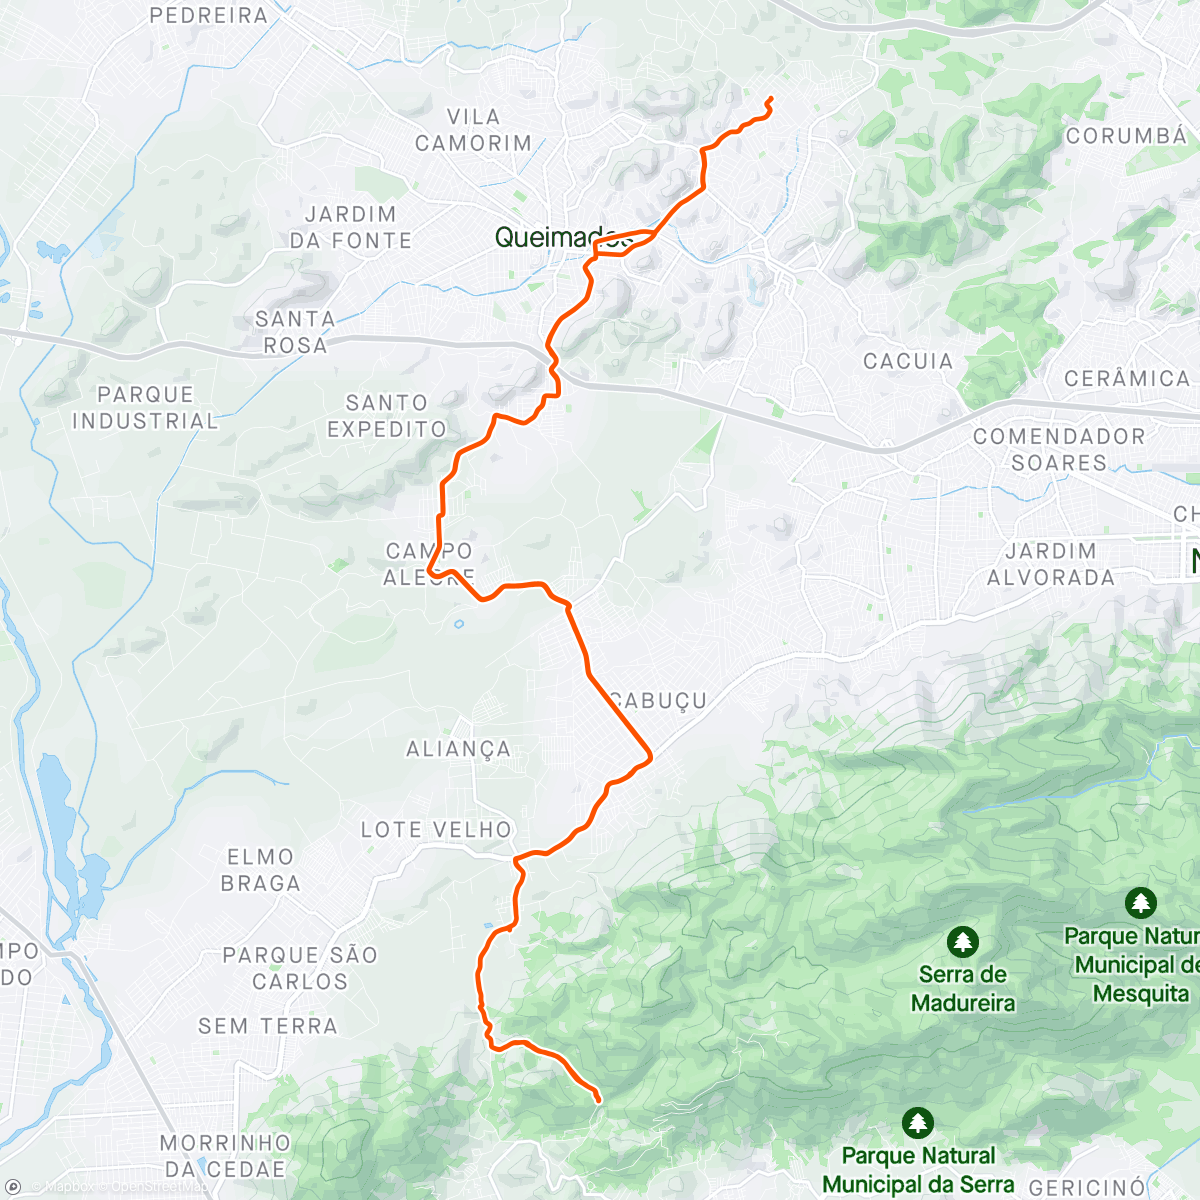 「Pedal Cachoeira do Mendanha!」活動的地圖